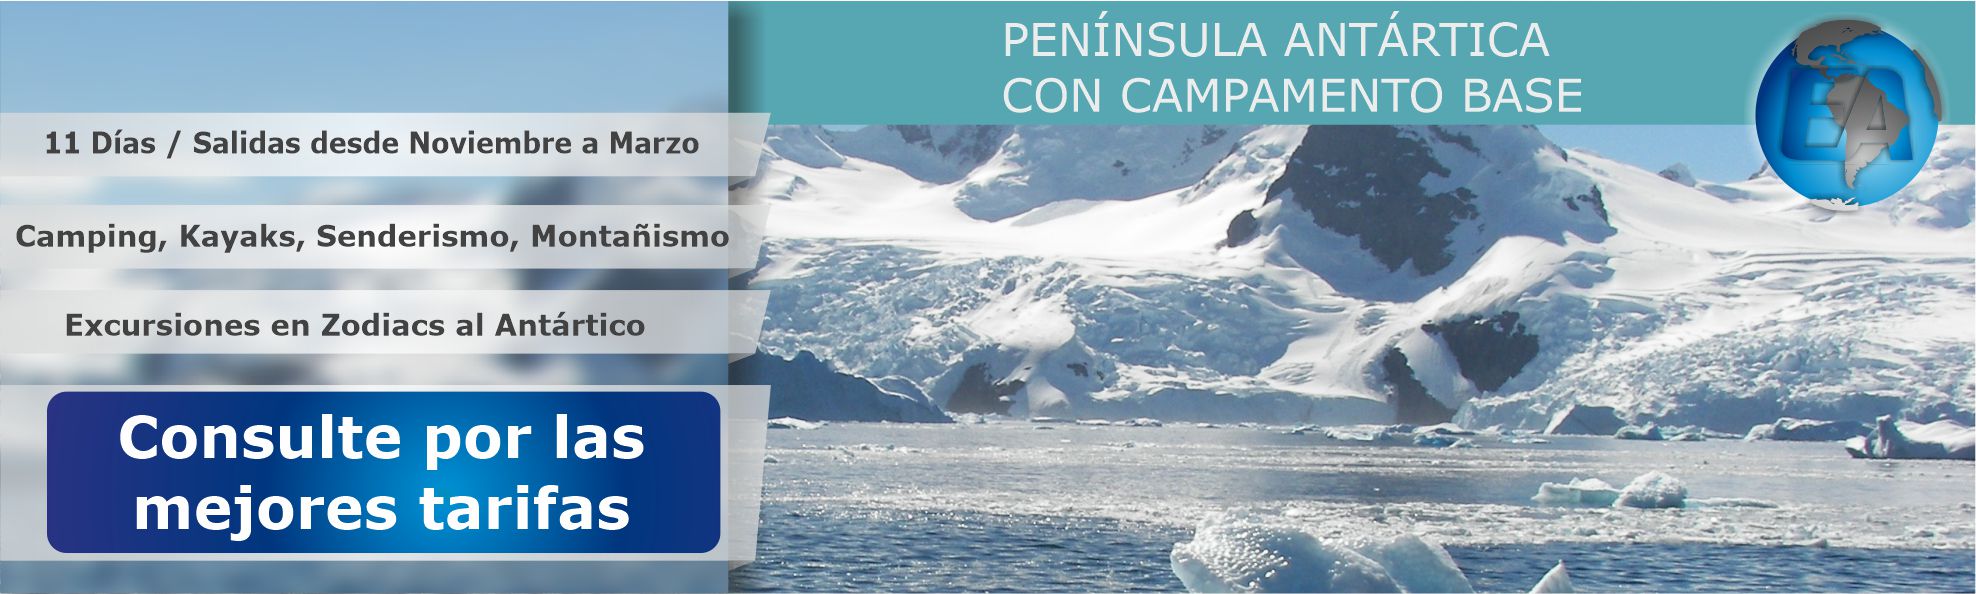 Península Antártica con campamento base en 11 Días